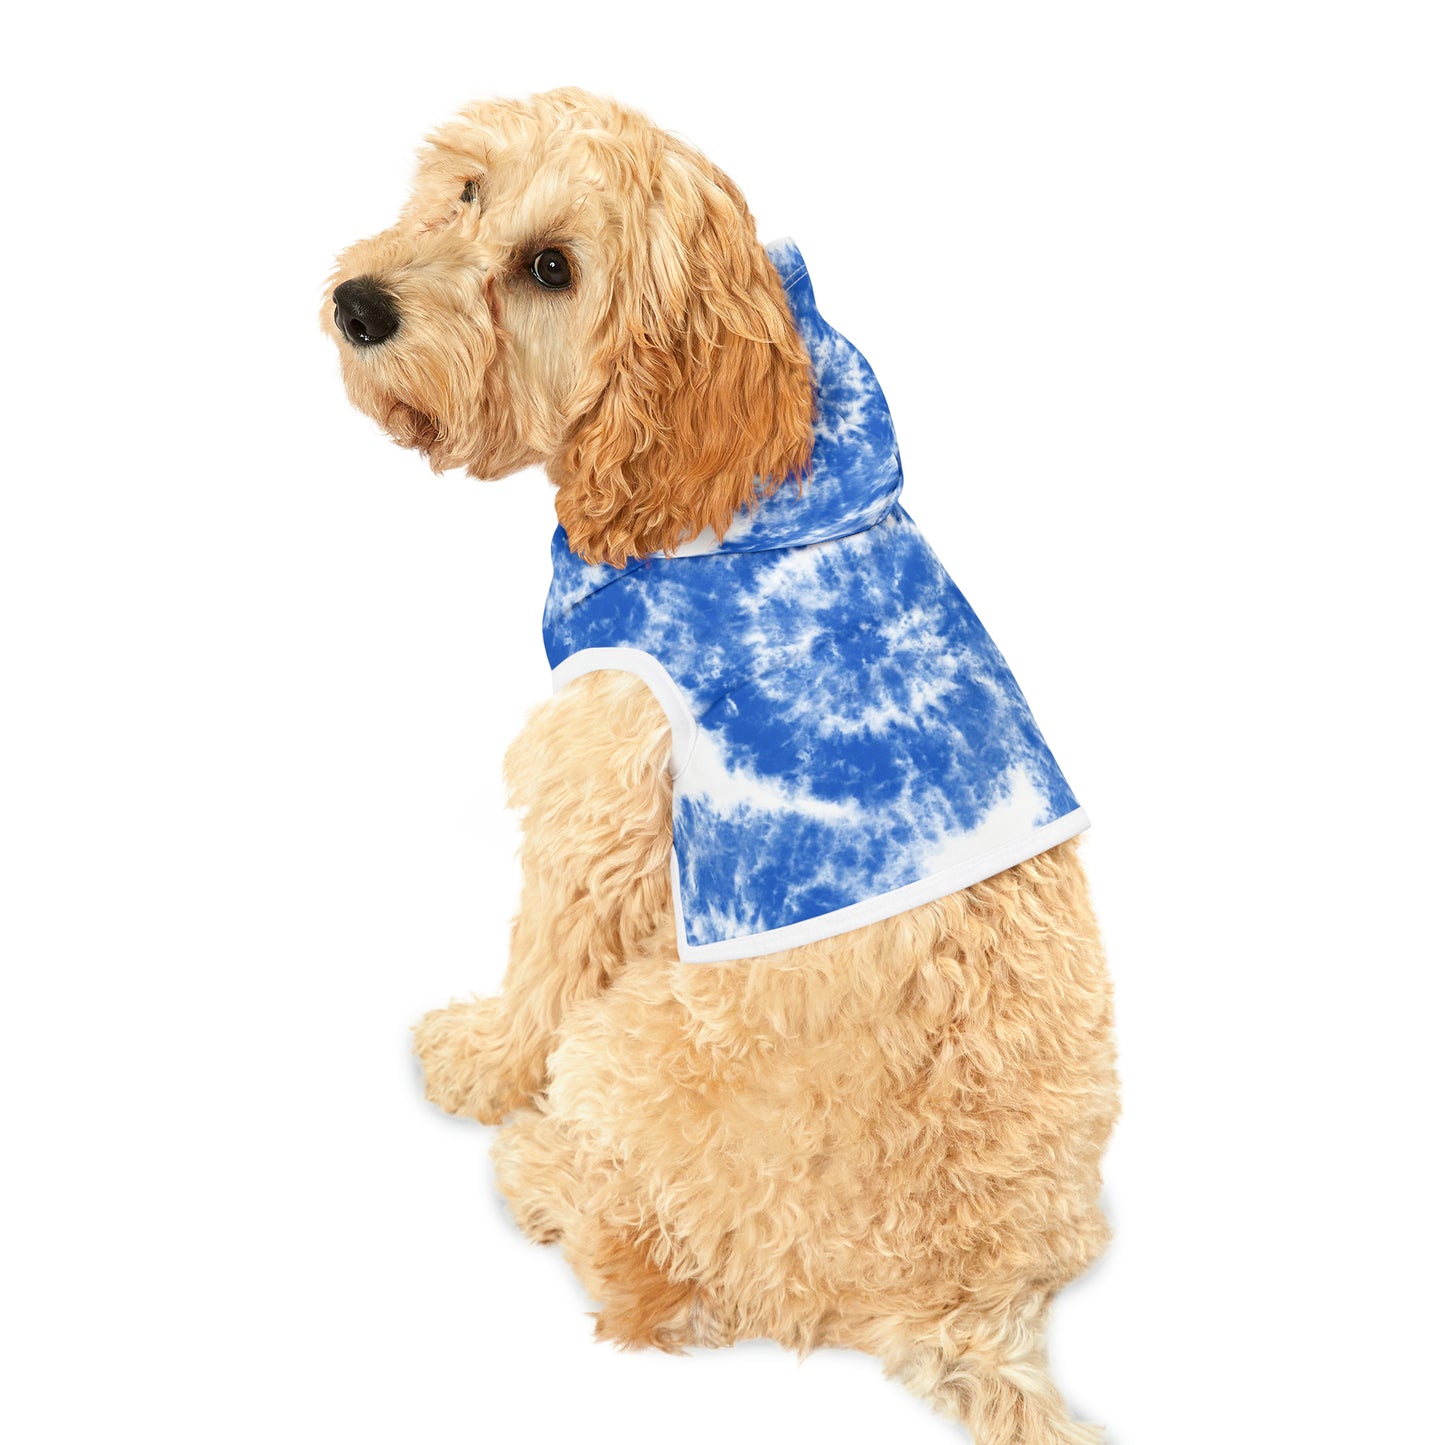 Blue Skies & Starlight: Hanukkah-Inspired Tie-Dye Pet Hoodie for Festive Celebrations"